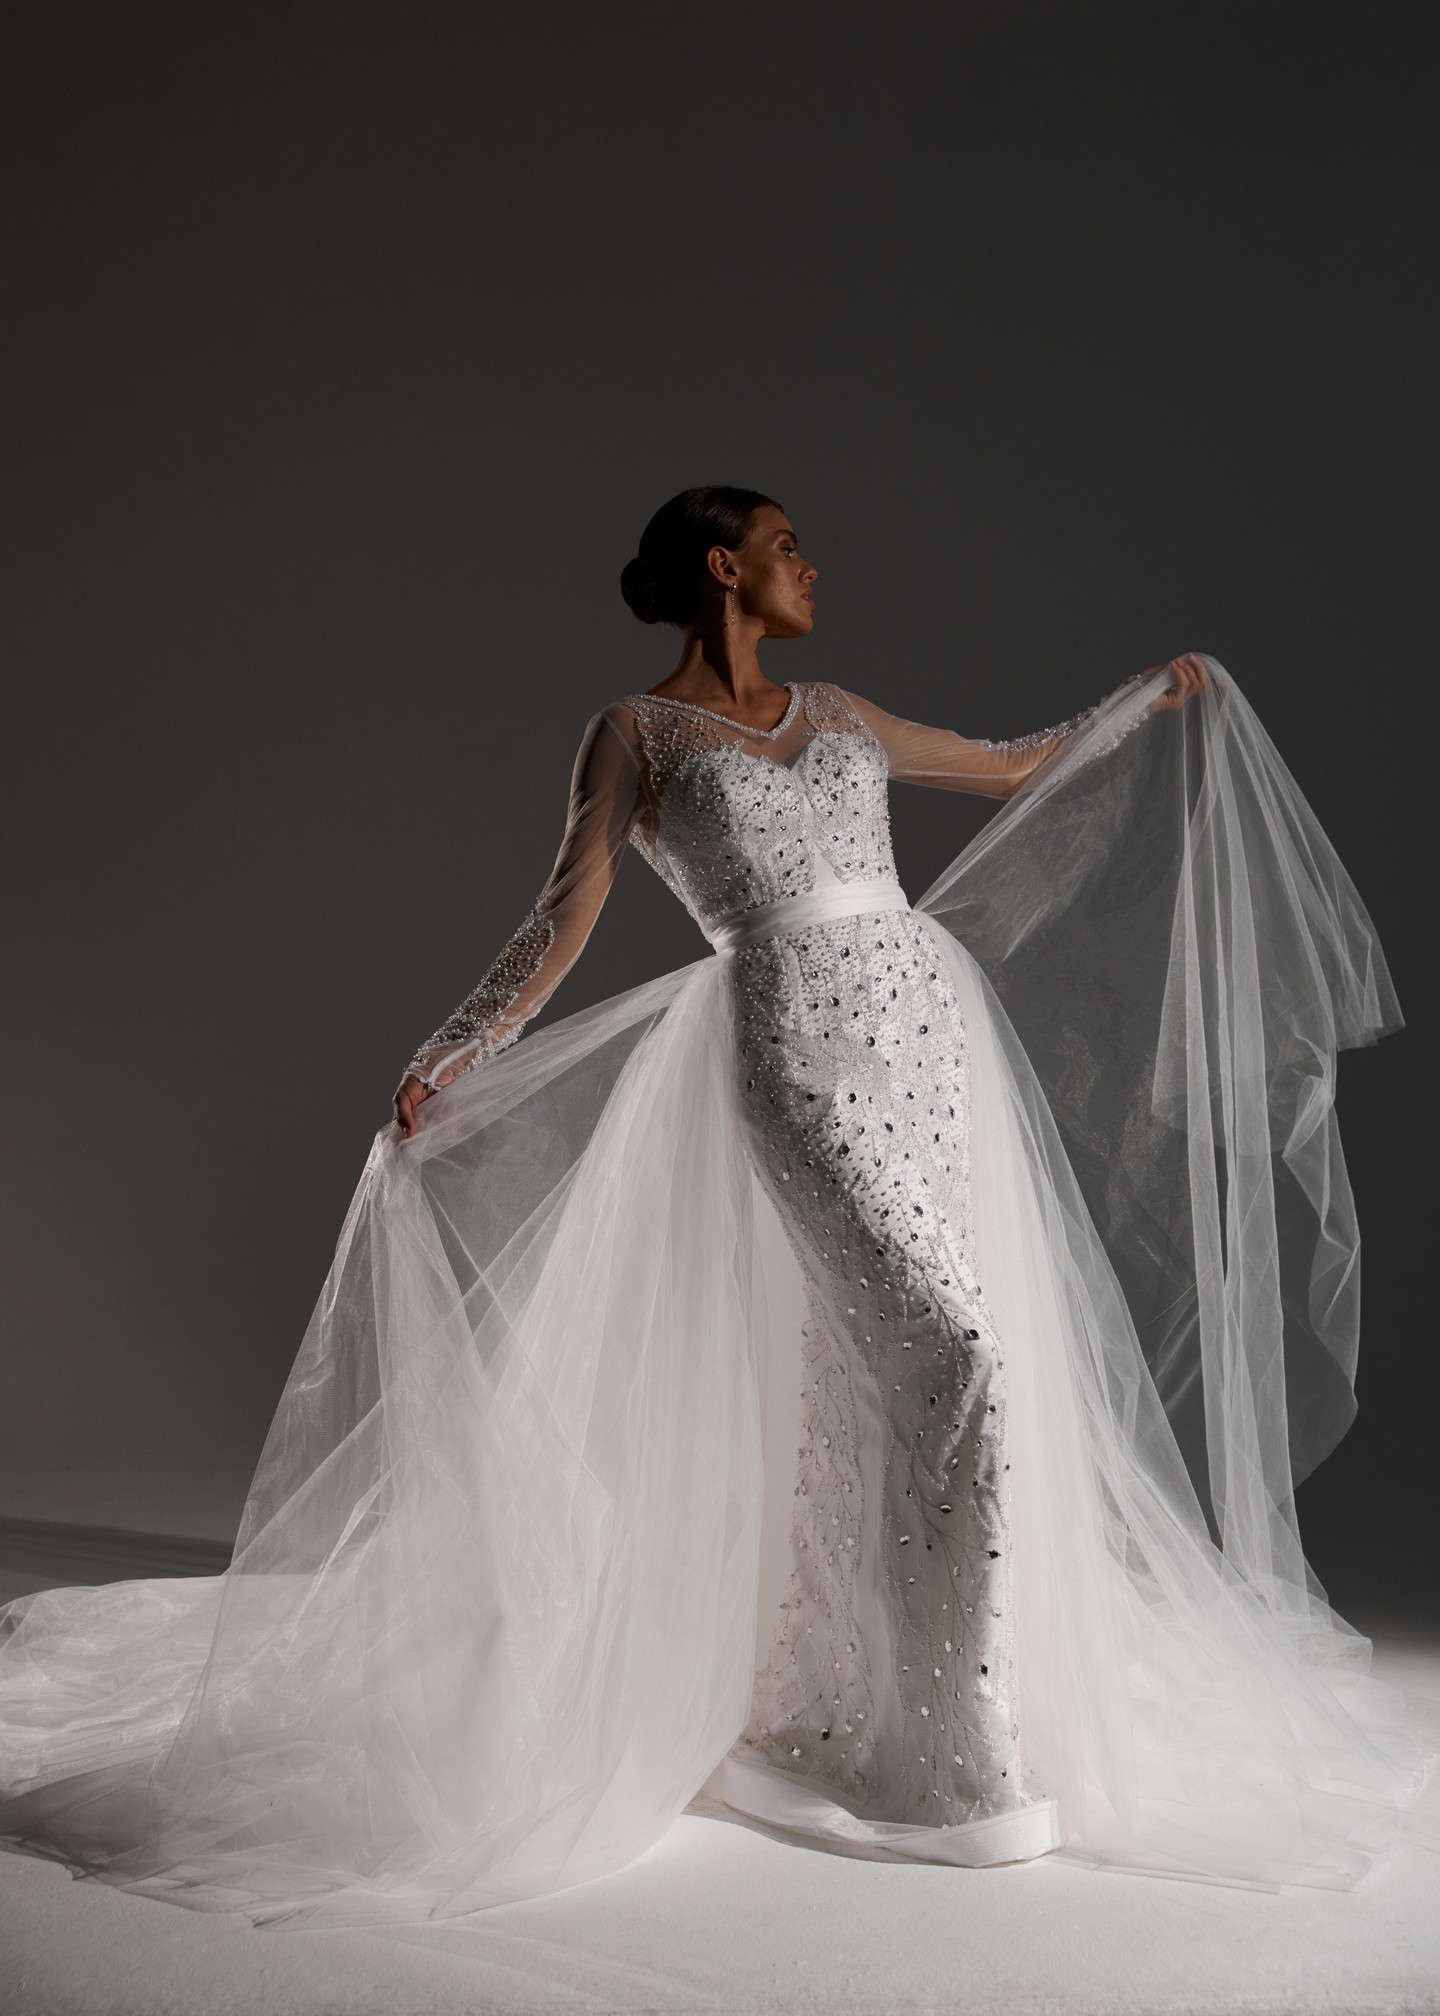 Платье Адриана, 2021, одежда, платье, свадебное, молочно-белый, Адриана, вышивка, прямой силуэт, рукава